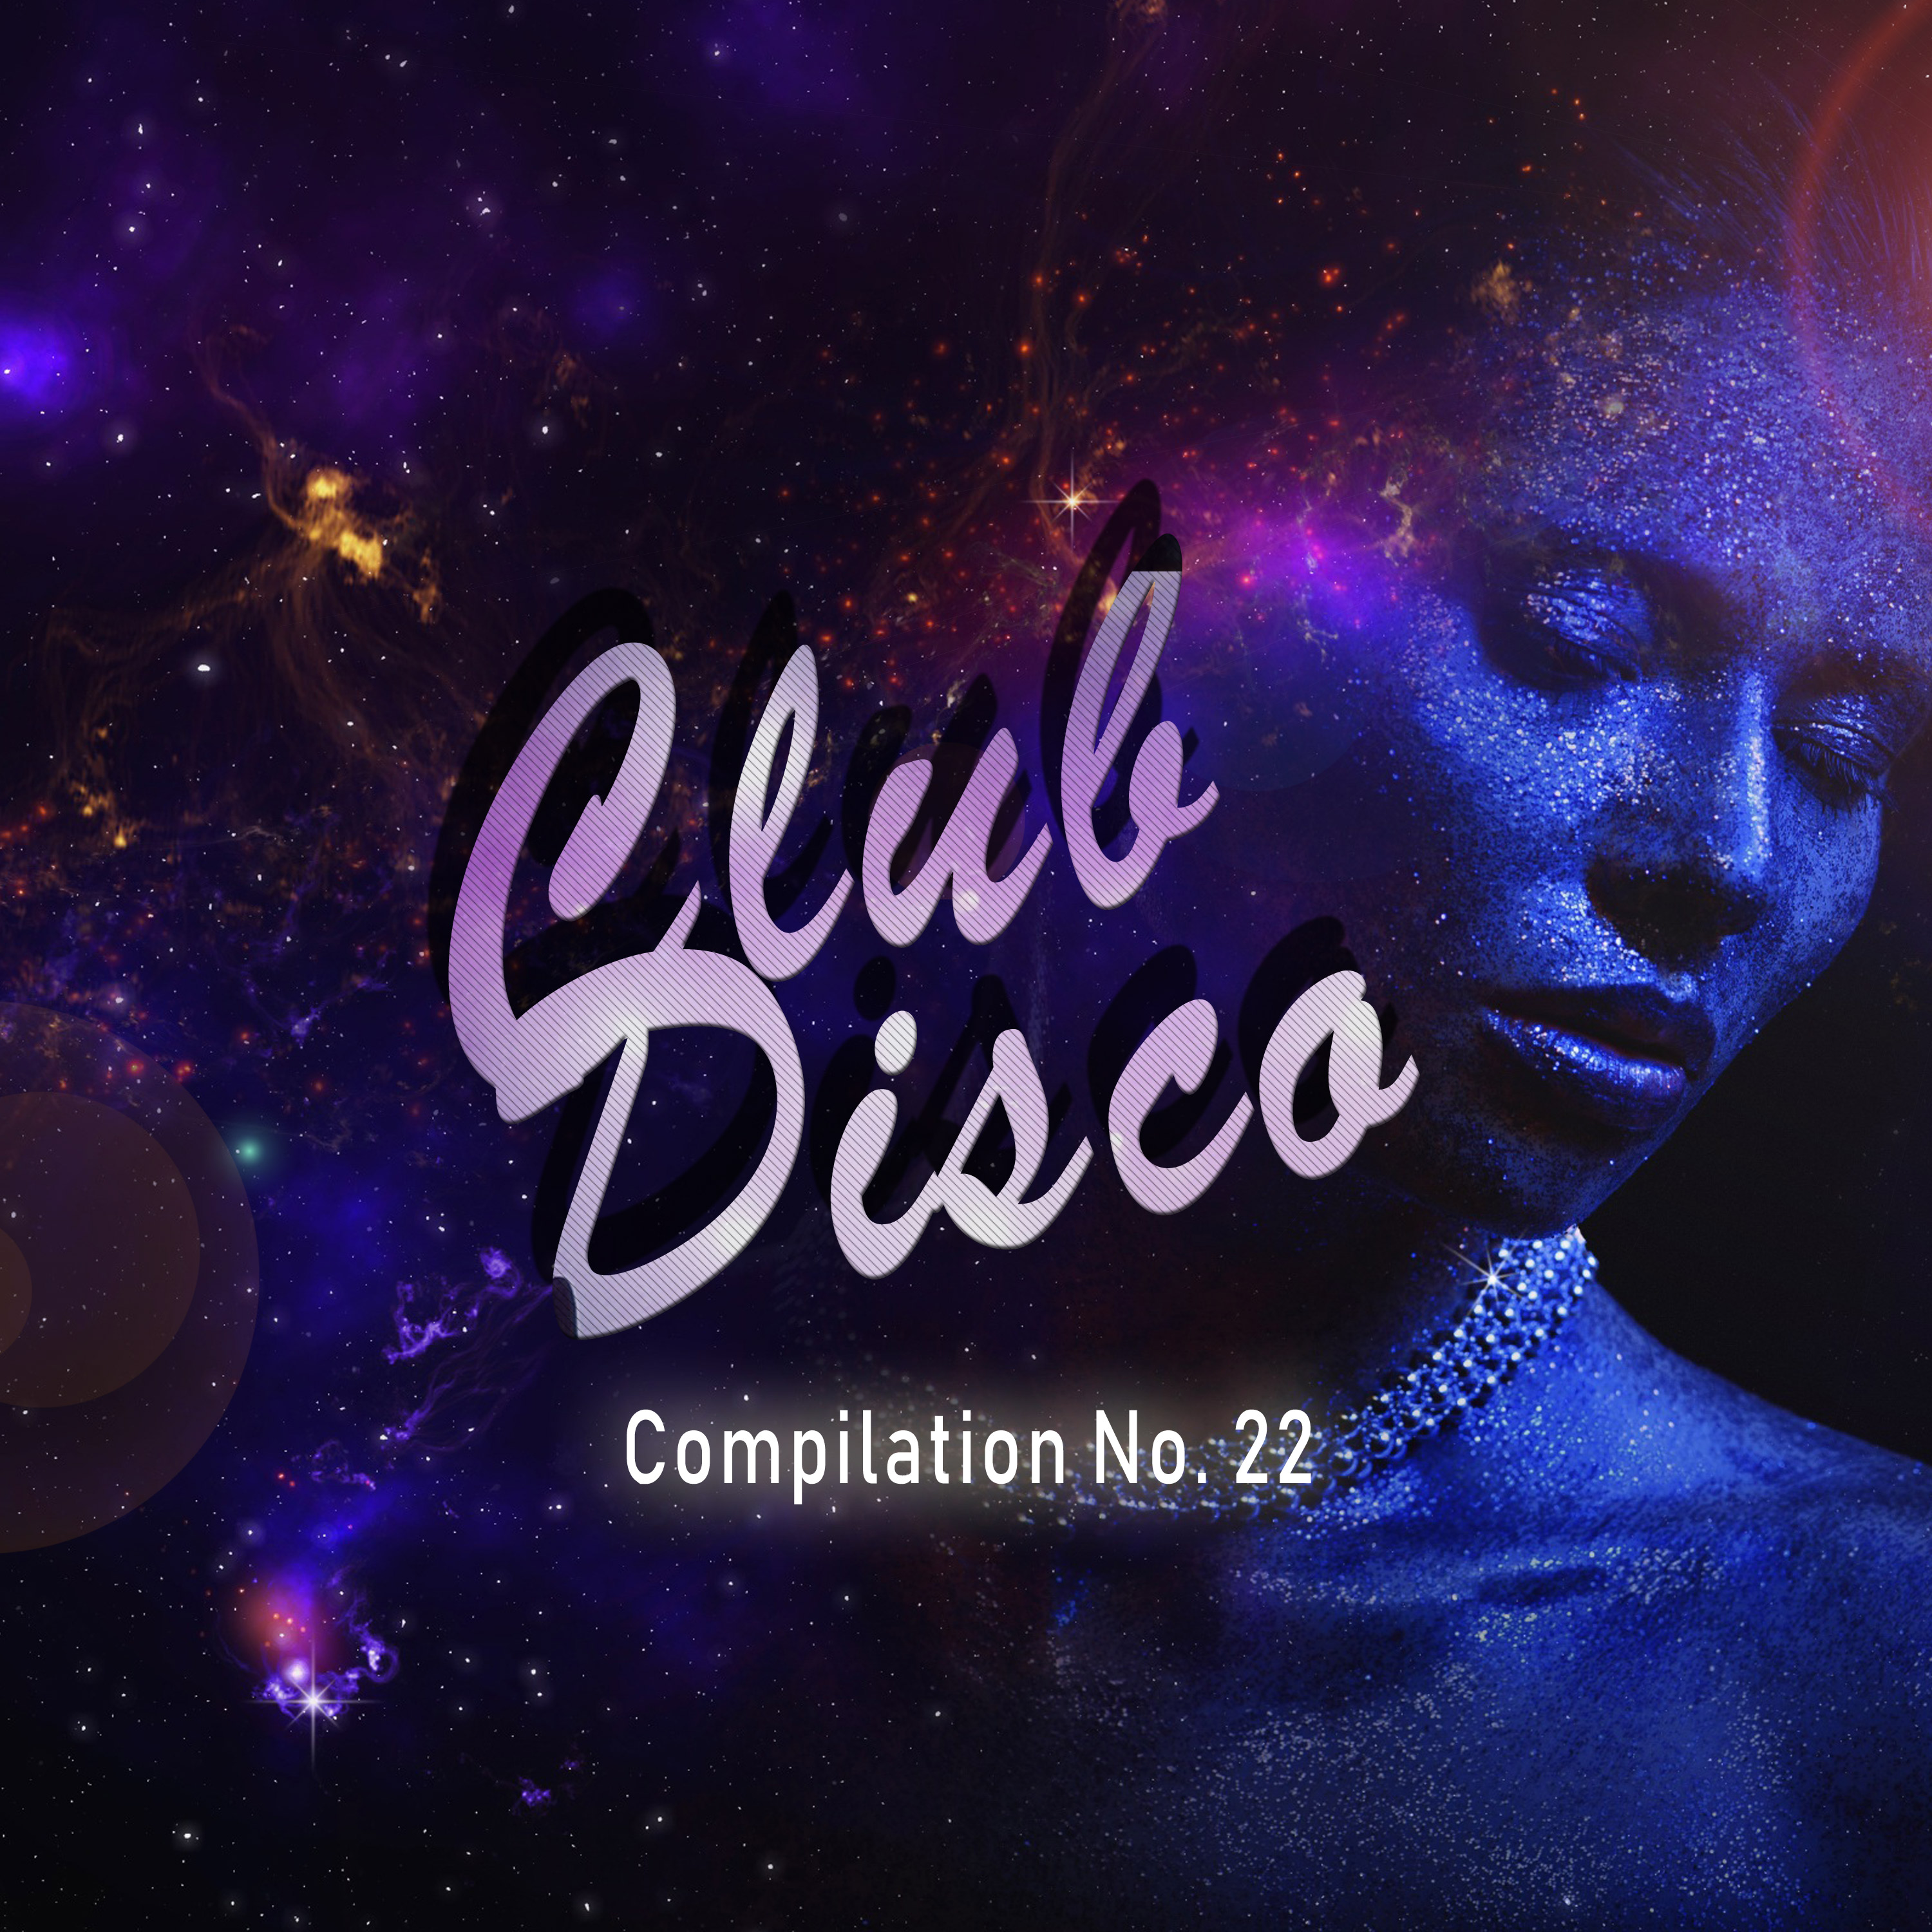 Club Disco Compilation, No. 22